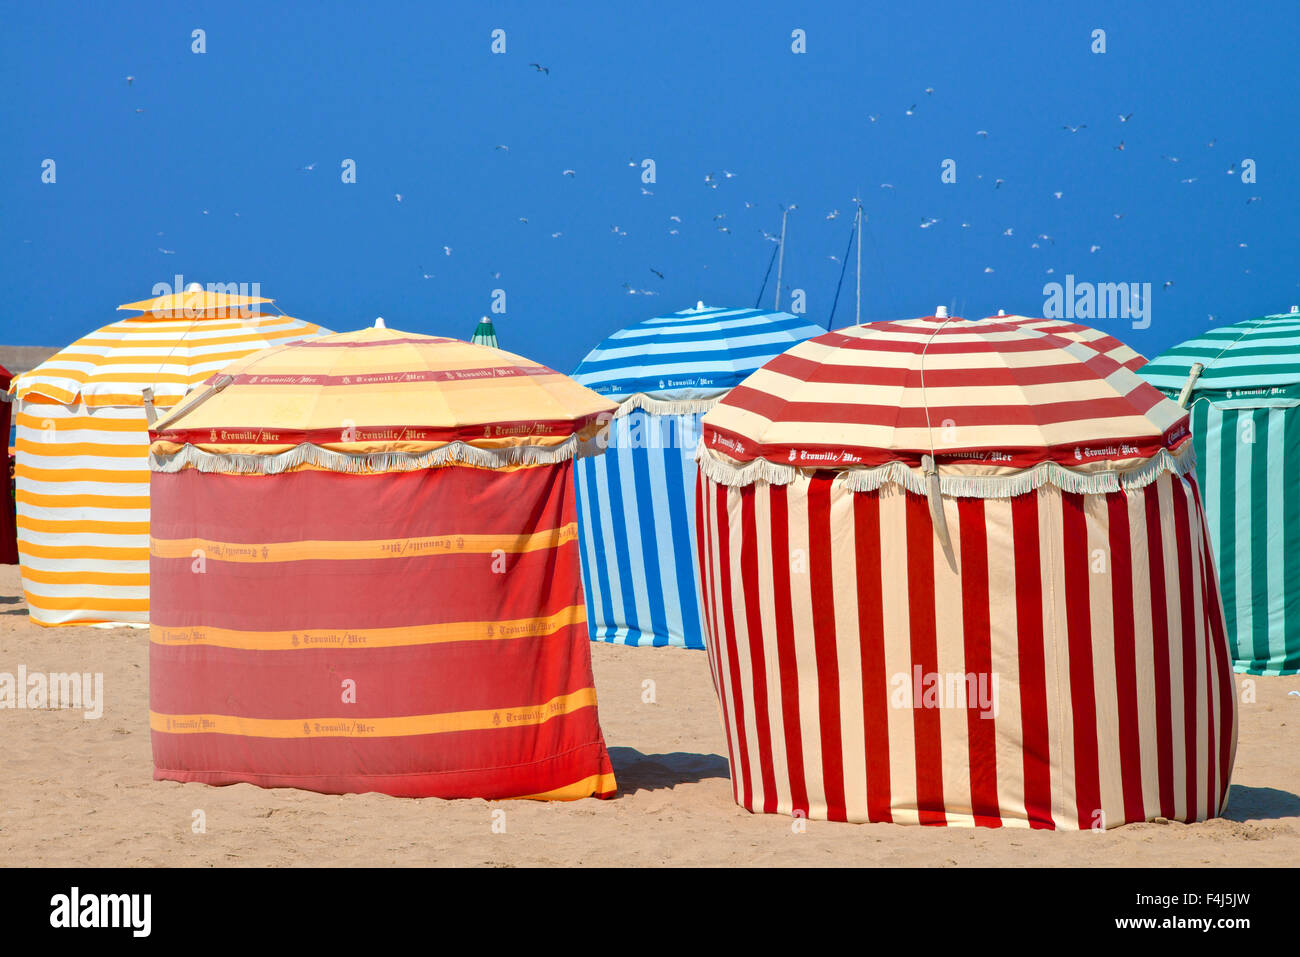 Rayures de couleur typiques cabines de plage, plage et mer, Trouville sur Mer, Normandie, France, Europe Banque D'Images